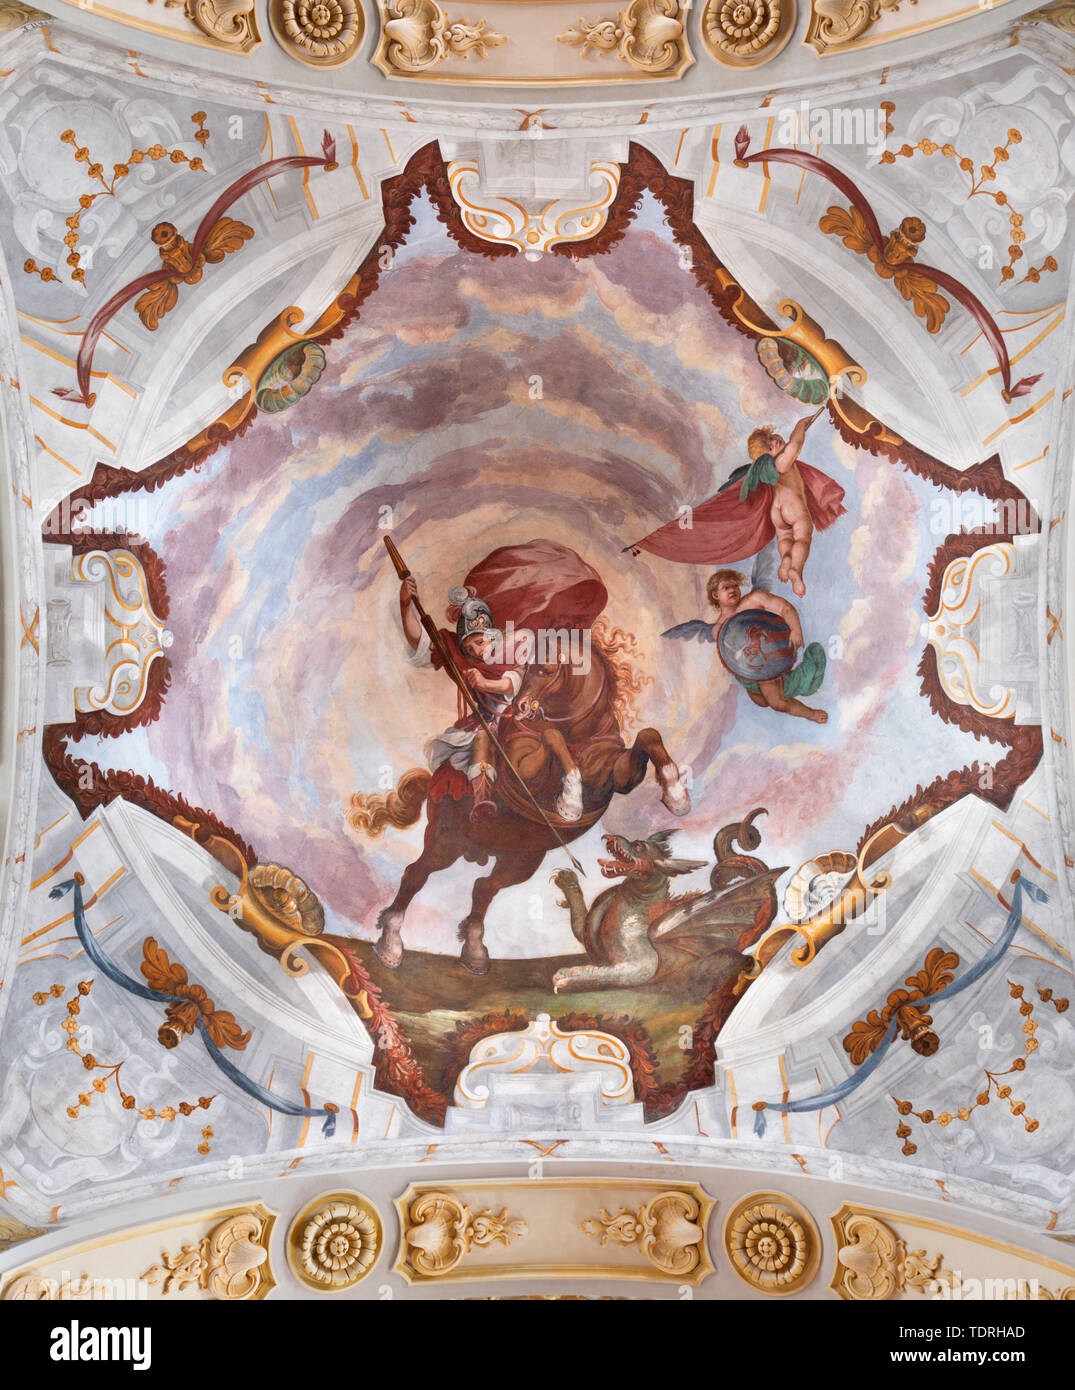 COMO, ITALY - MAY 8, 2015: The naroque fresco of St. George in chruch Chiesa di San Giorgio by Giovanni  Paolo Recchi (1686). Stock Photo